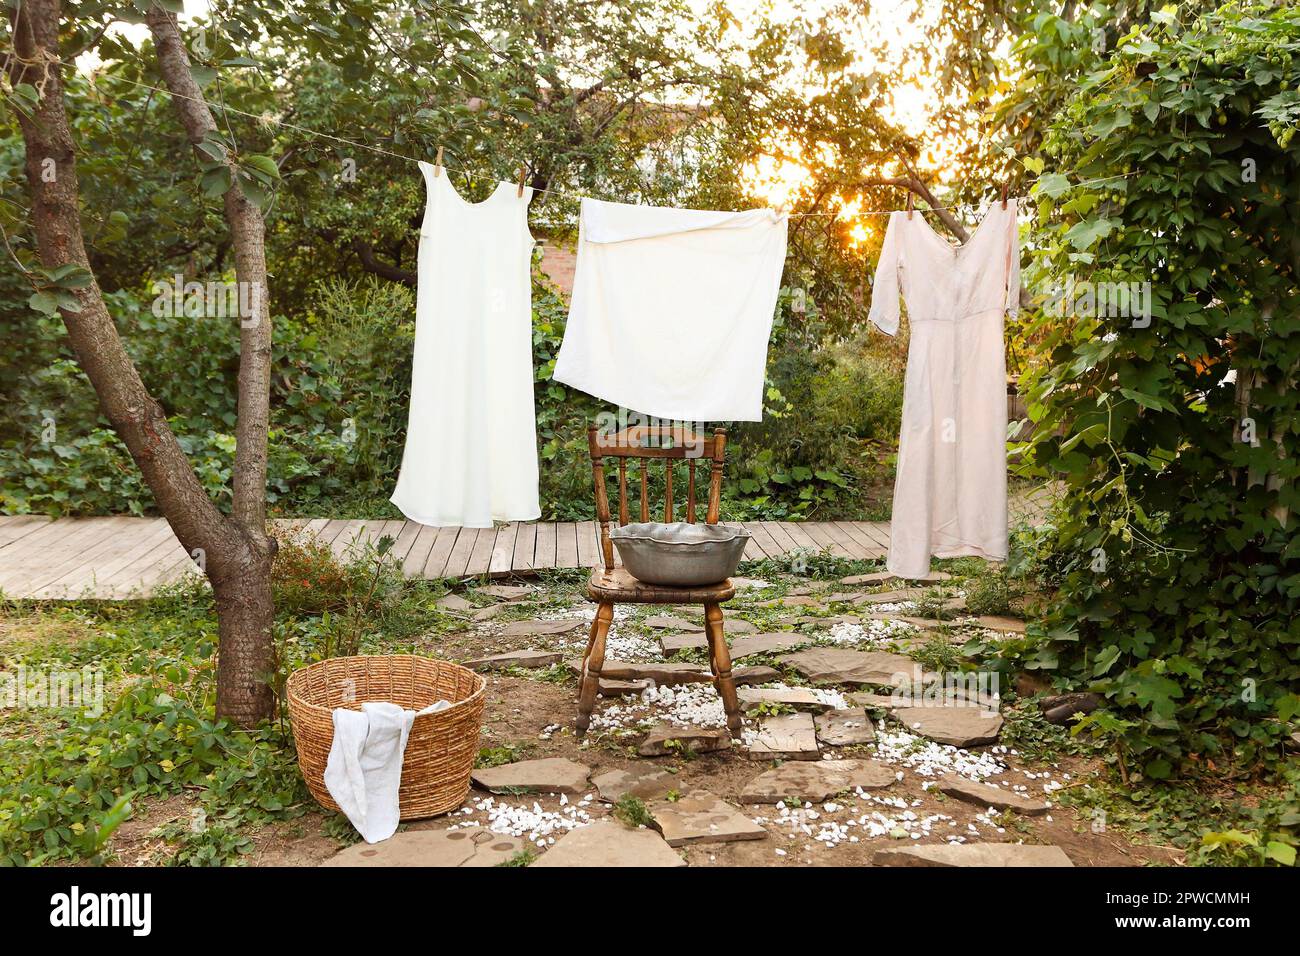 Reinigen Sie nasse Kleidungsstücke, die an einem Seil hängen und trocknen Sie sie am Wäschetag in der Nähe eines Retro-Stuhls und einer Schüssel im Garten Stockfoto